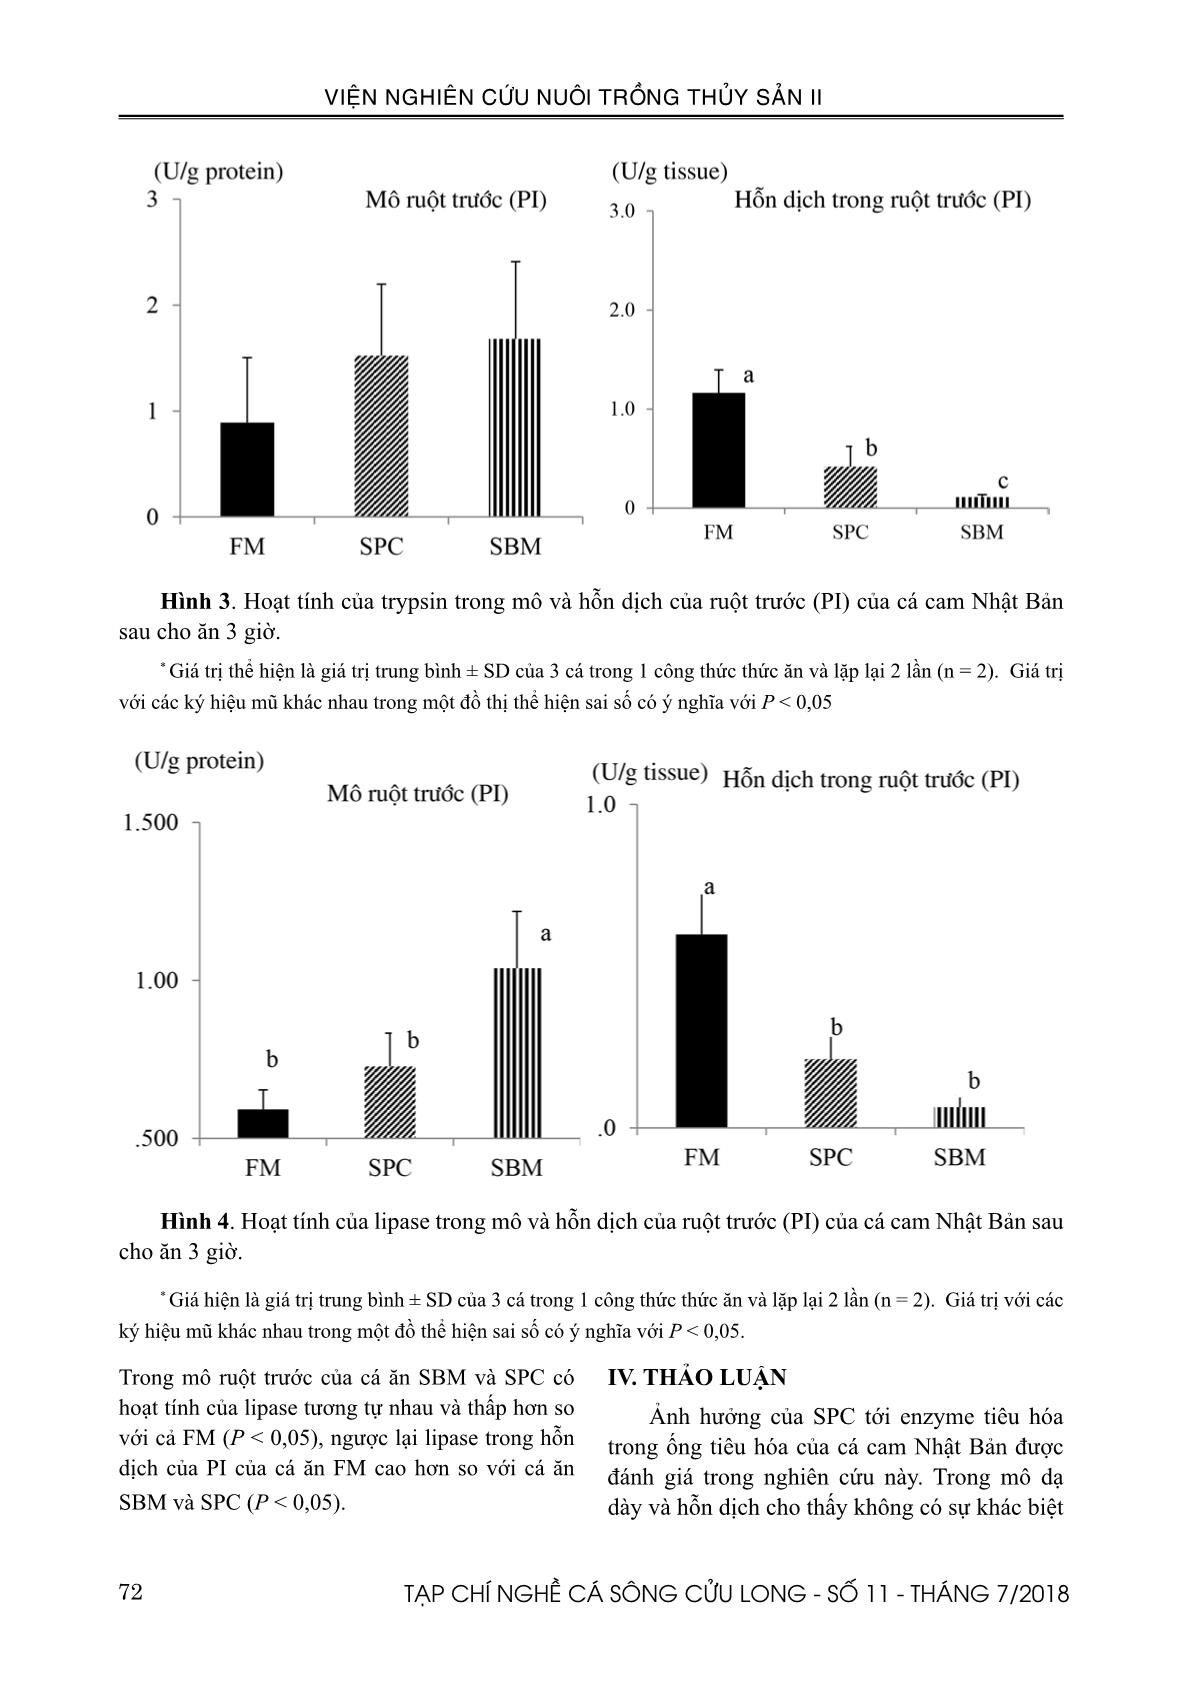 Ảnh hưởng của Soy protein concentrate (SPC) tới enzyme tiêu hóa của cá cam Nhật Bản (Seriola quinqueradiata Temminck & Schlegel, 1845) trang 6